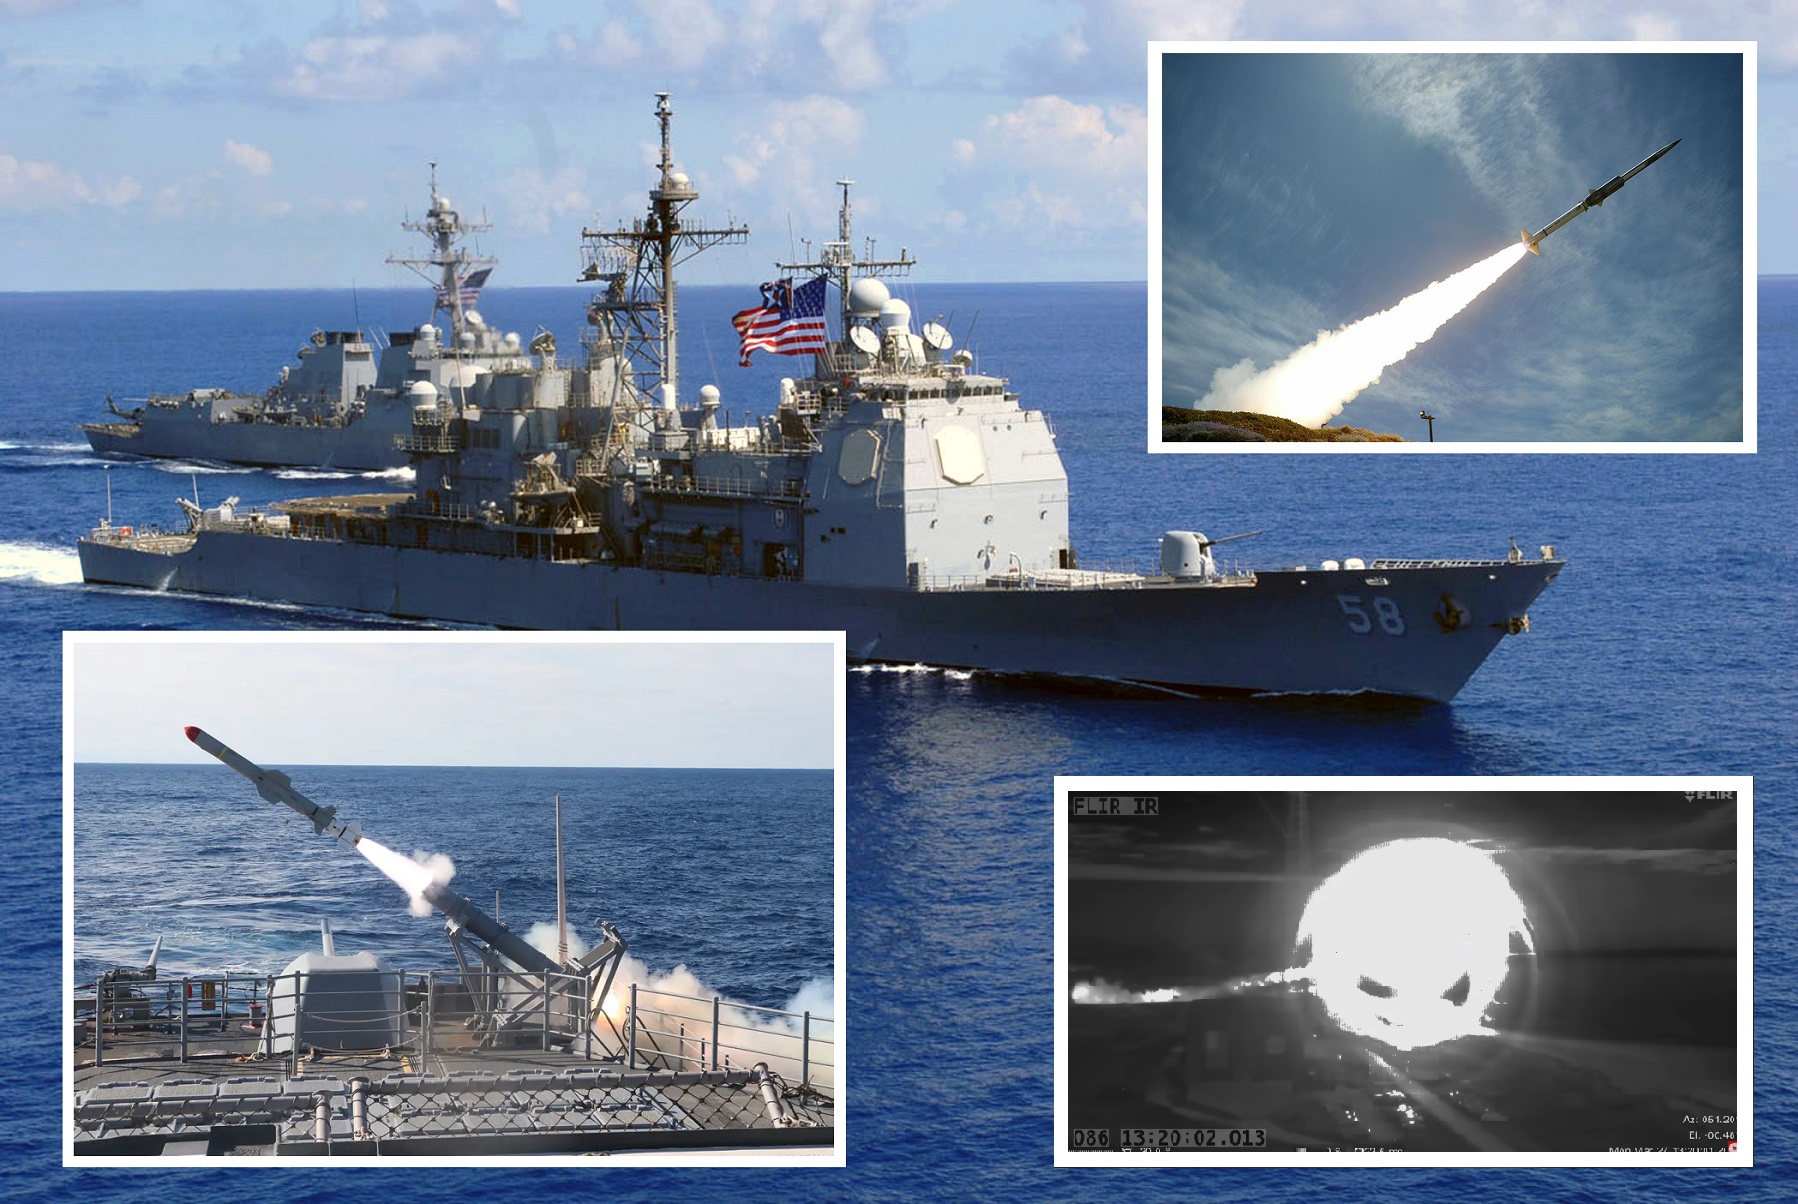 Le destroyer USS Mason et le croiseur USS Philippine ont détruit la cible supersonique GQM-163 Coyote avec deux missiles SM-2 en quelques secondes.